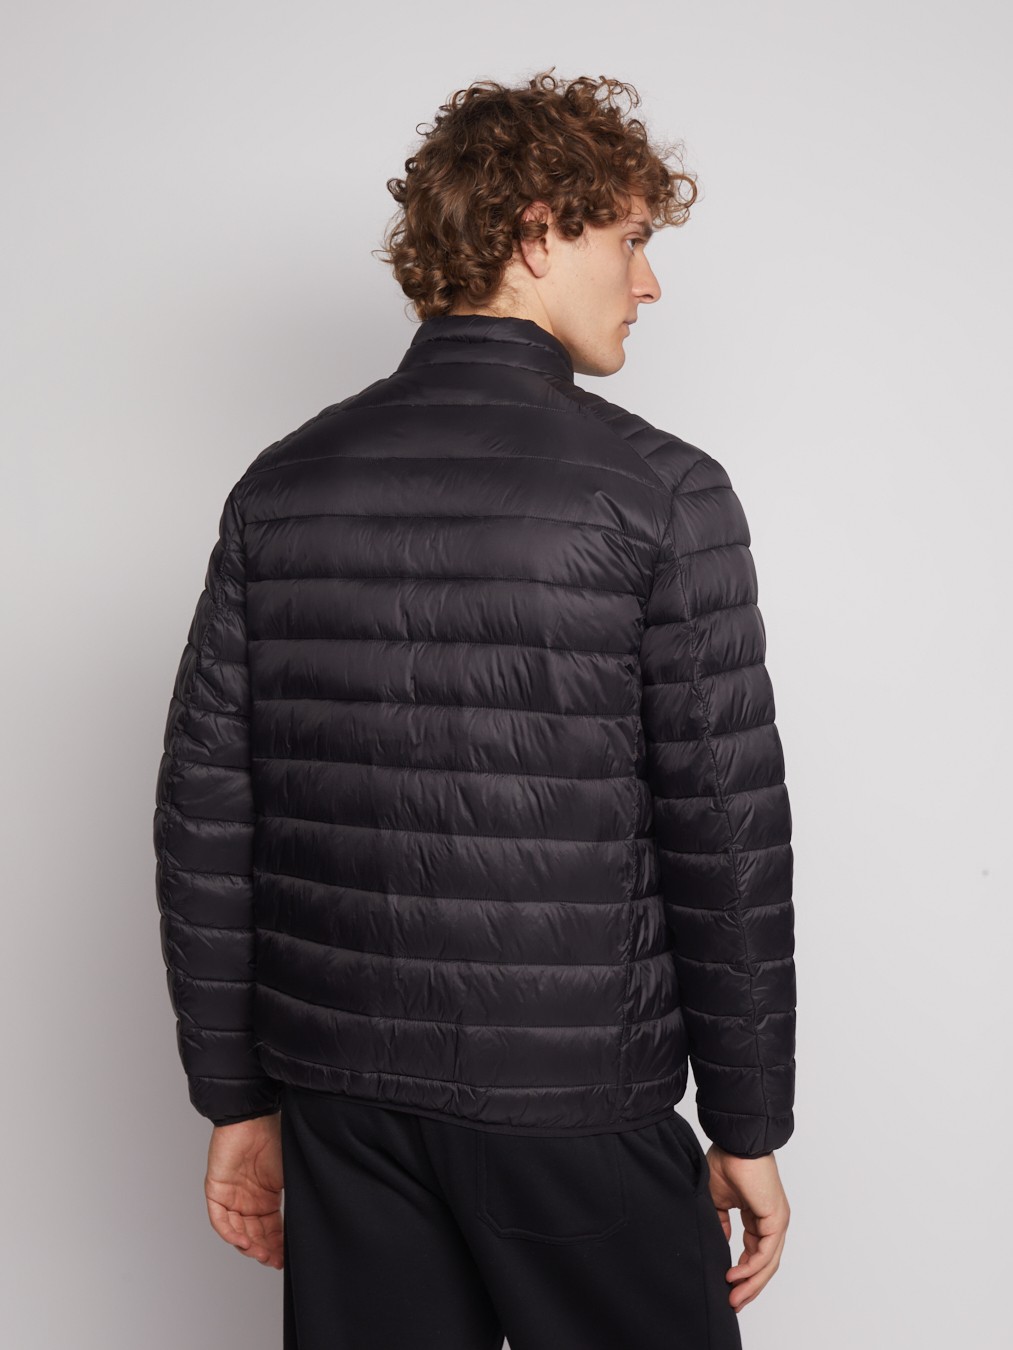 Лёгкая куртка с воротником-стойкой zolla 012335102034, цвет черный, размер S - фото 6